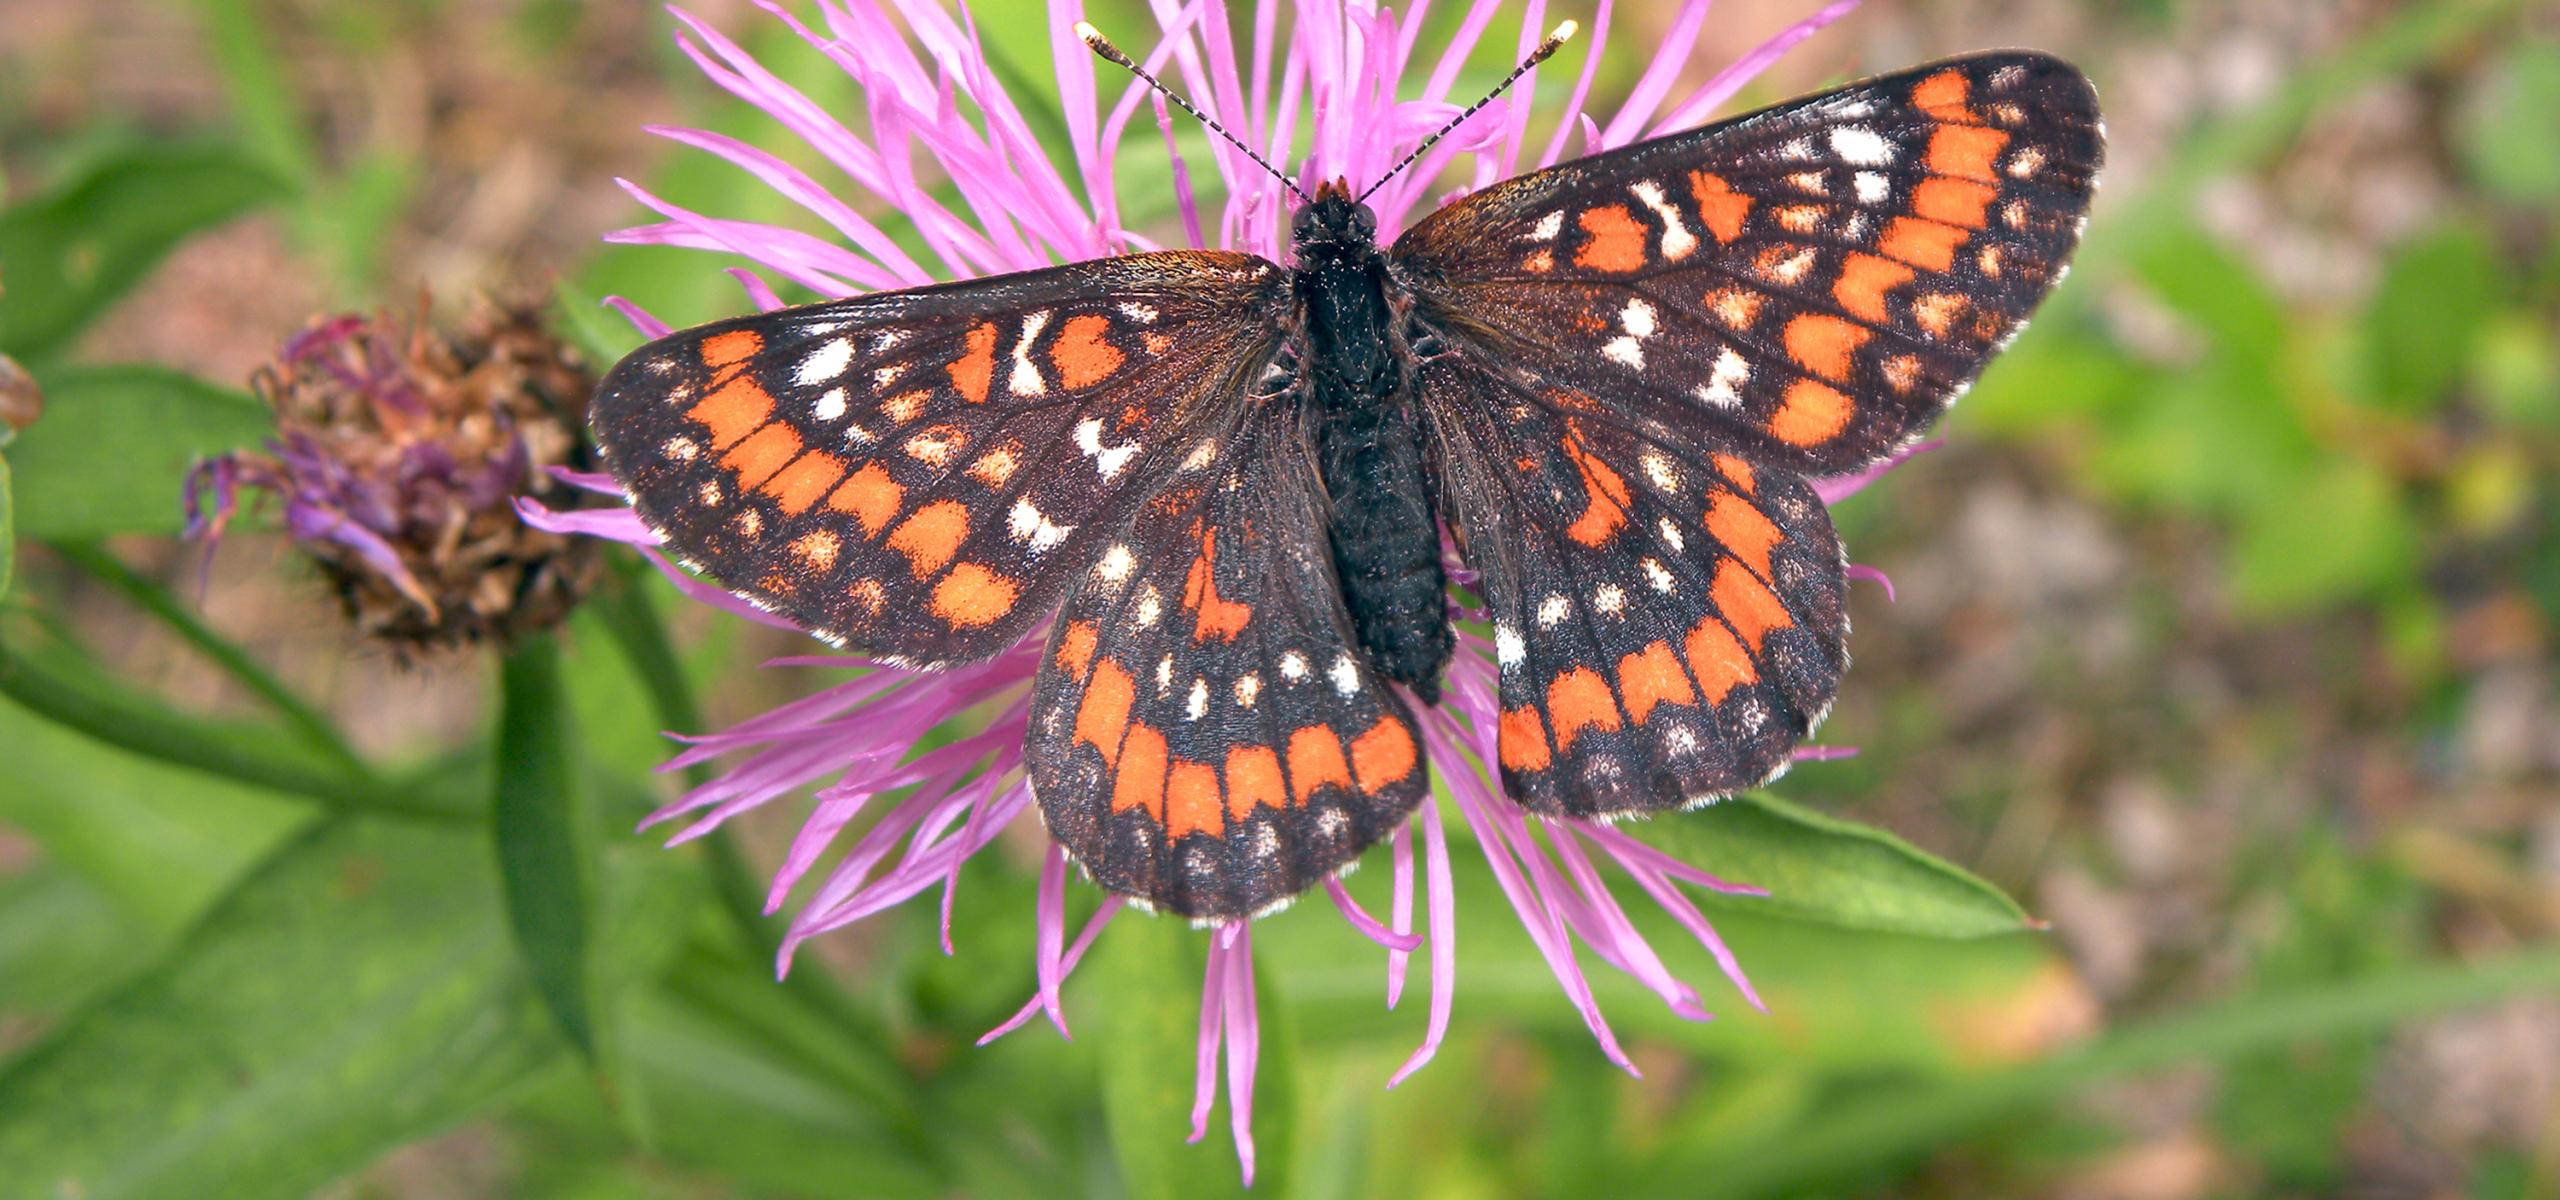 Oranžovohnědě zbarvený motýl s rozevřenými křídly sedící na růžovém květu